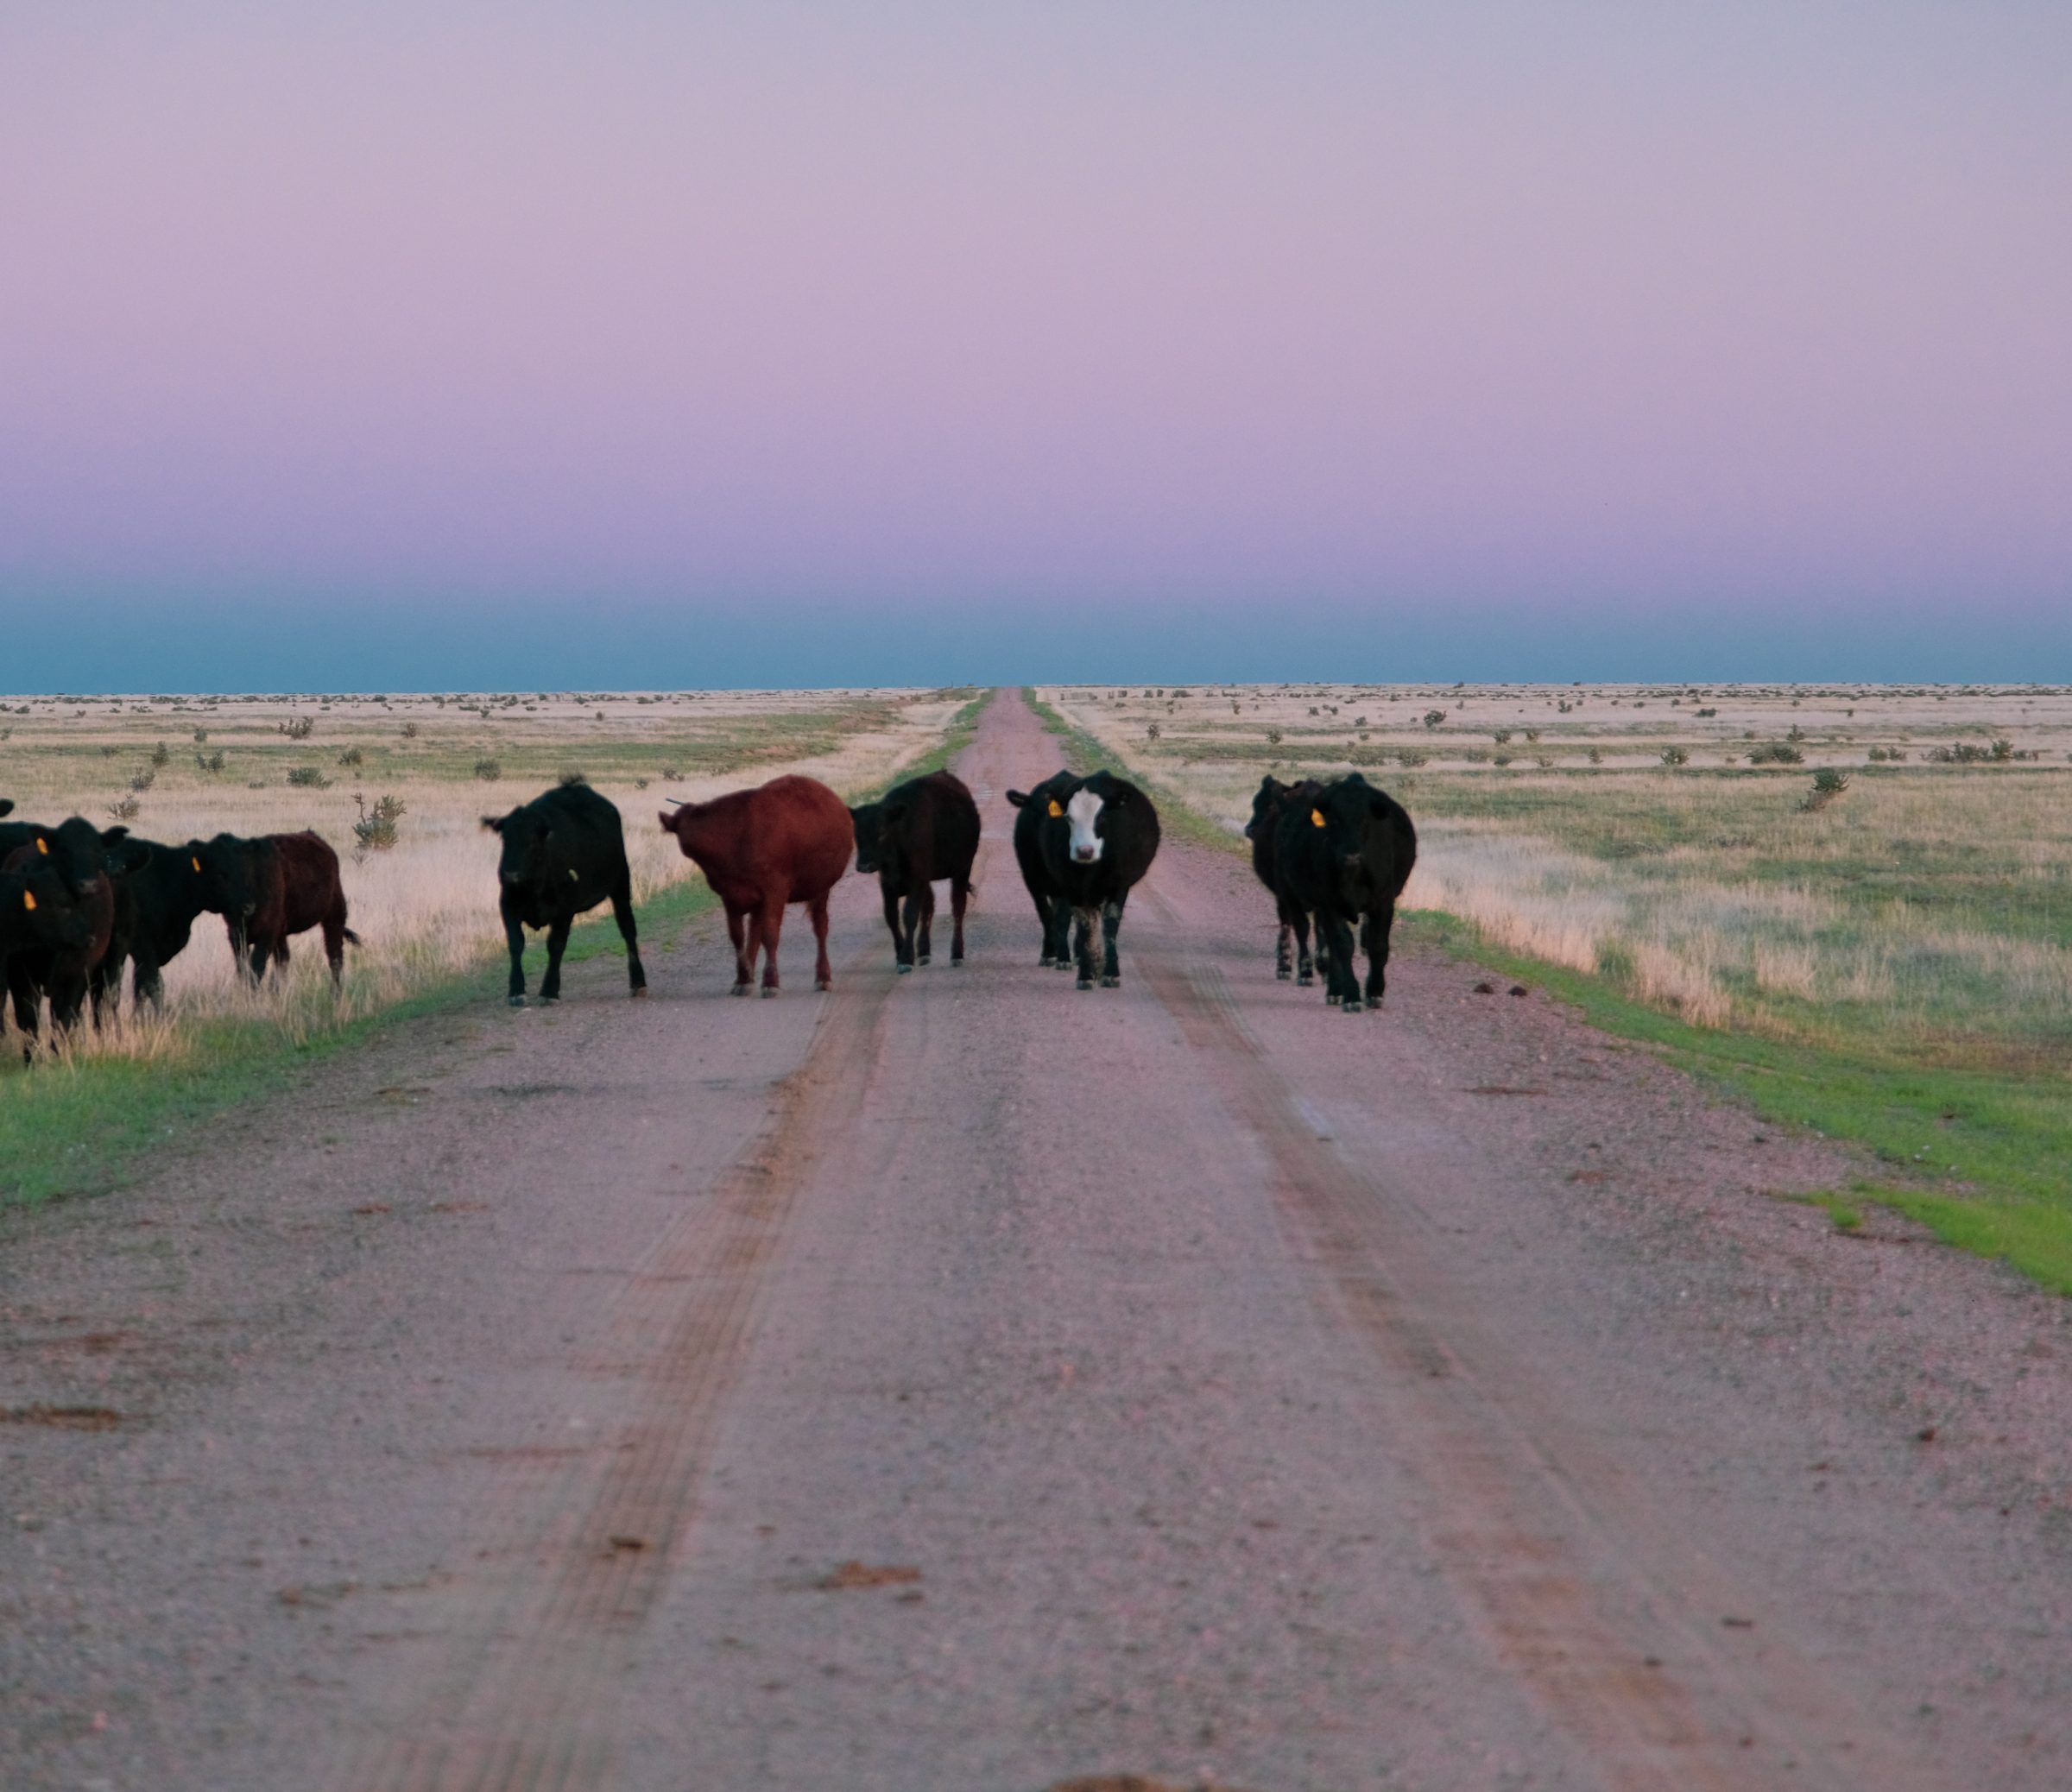 De hele kudde keek ons maar vreemd aan. De koeien hadden blijkbaar ook al even geen mensen gezien in dit afgelegen landschap.